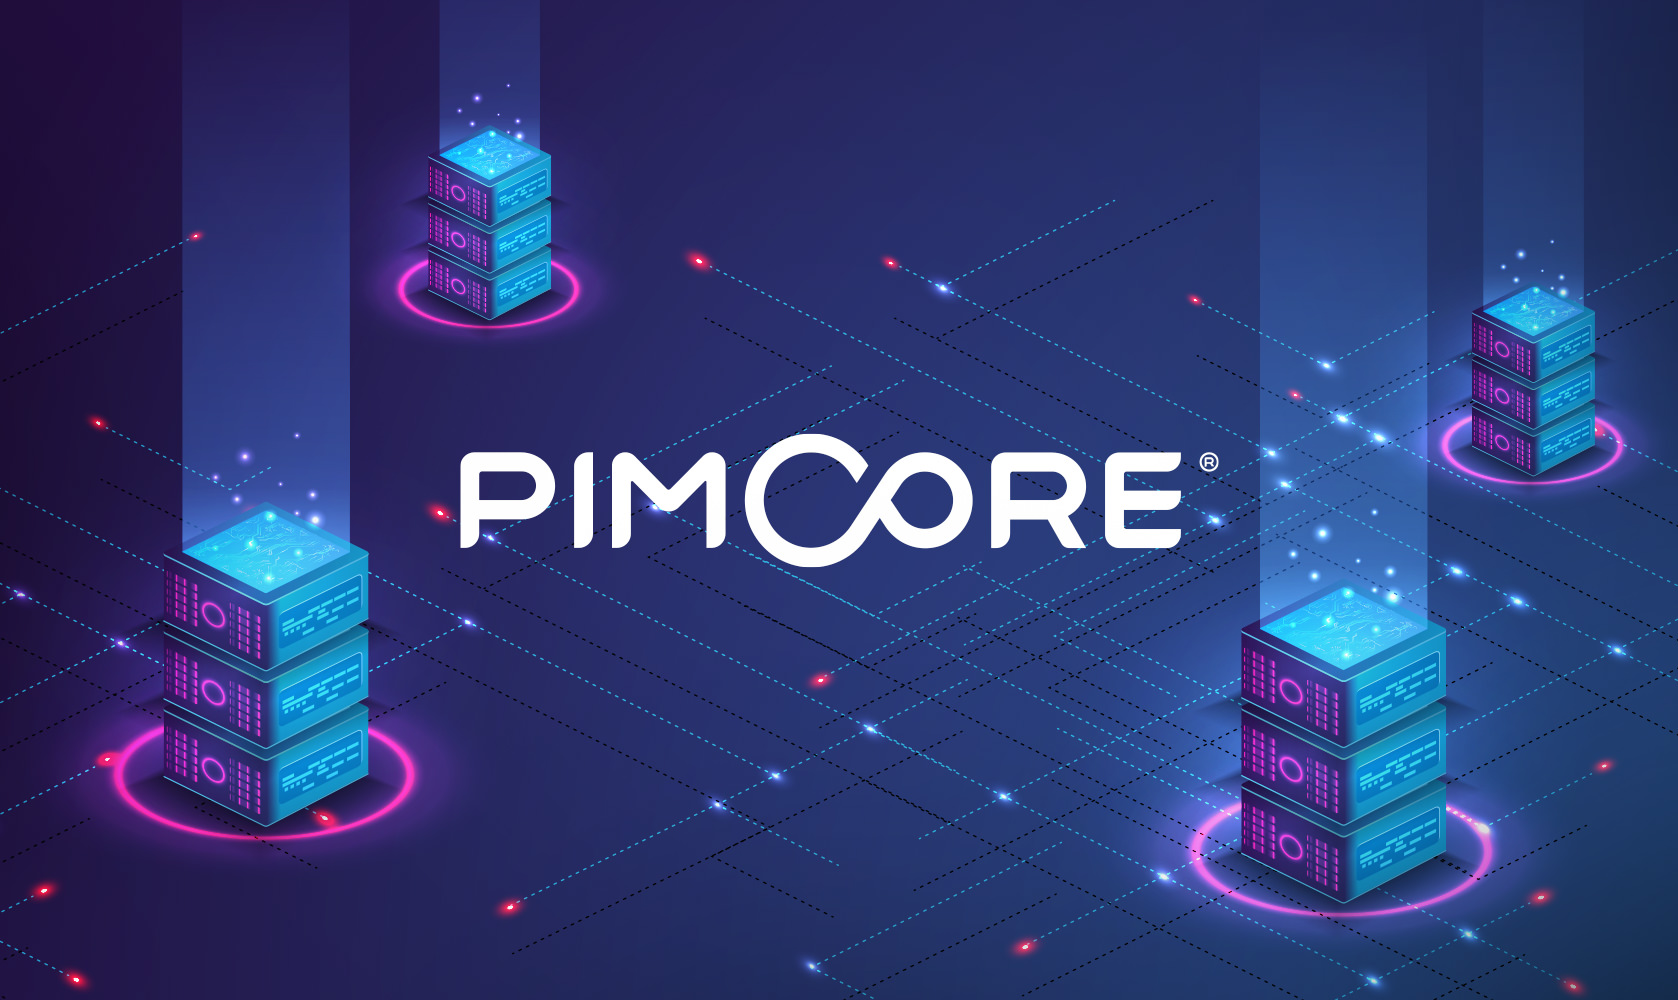 logo Pimcore dans univers numérique